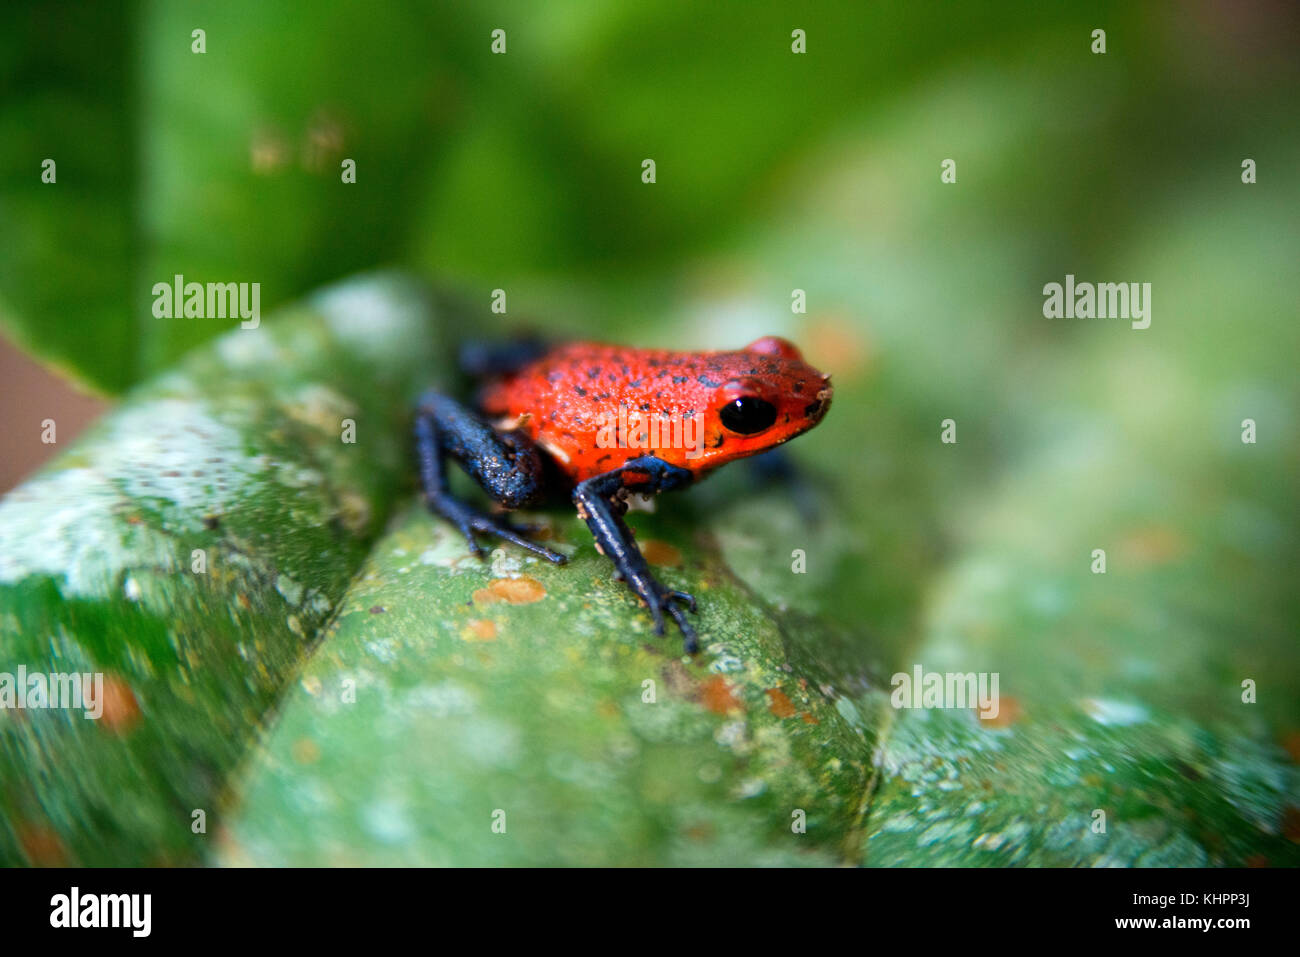 Strawberry-poison frog arrrow, rouge et bleu) à l'aide de poison, poison frog flaming-grenouille flèche bleu Jeans Poison Dart Frog (dendrobates pumilio), assis o Banque D'Images